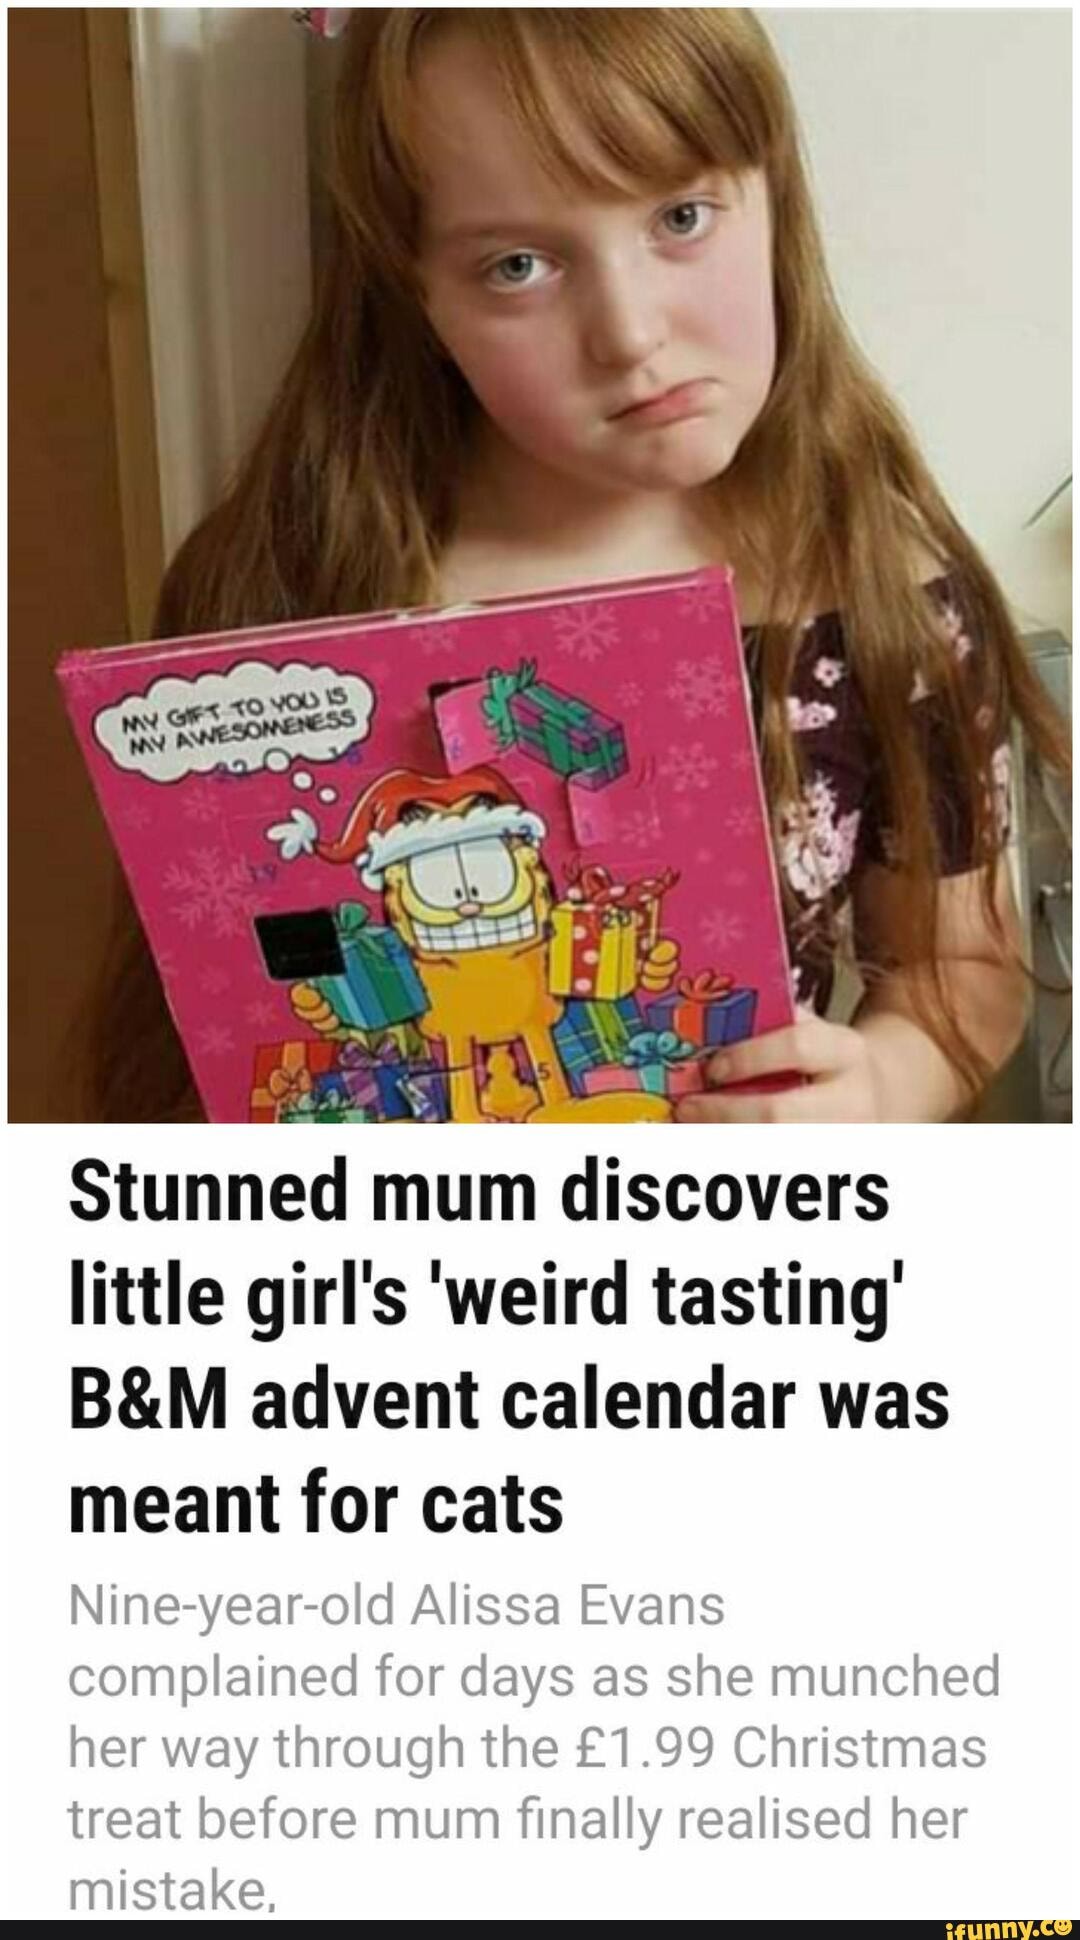 Stunned mum discovers little girl's 'weird tasting' advent calendar was